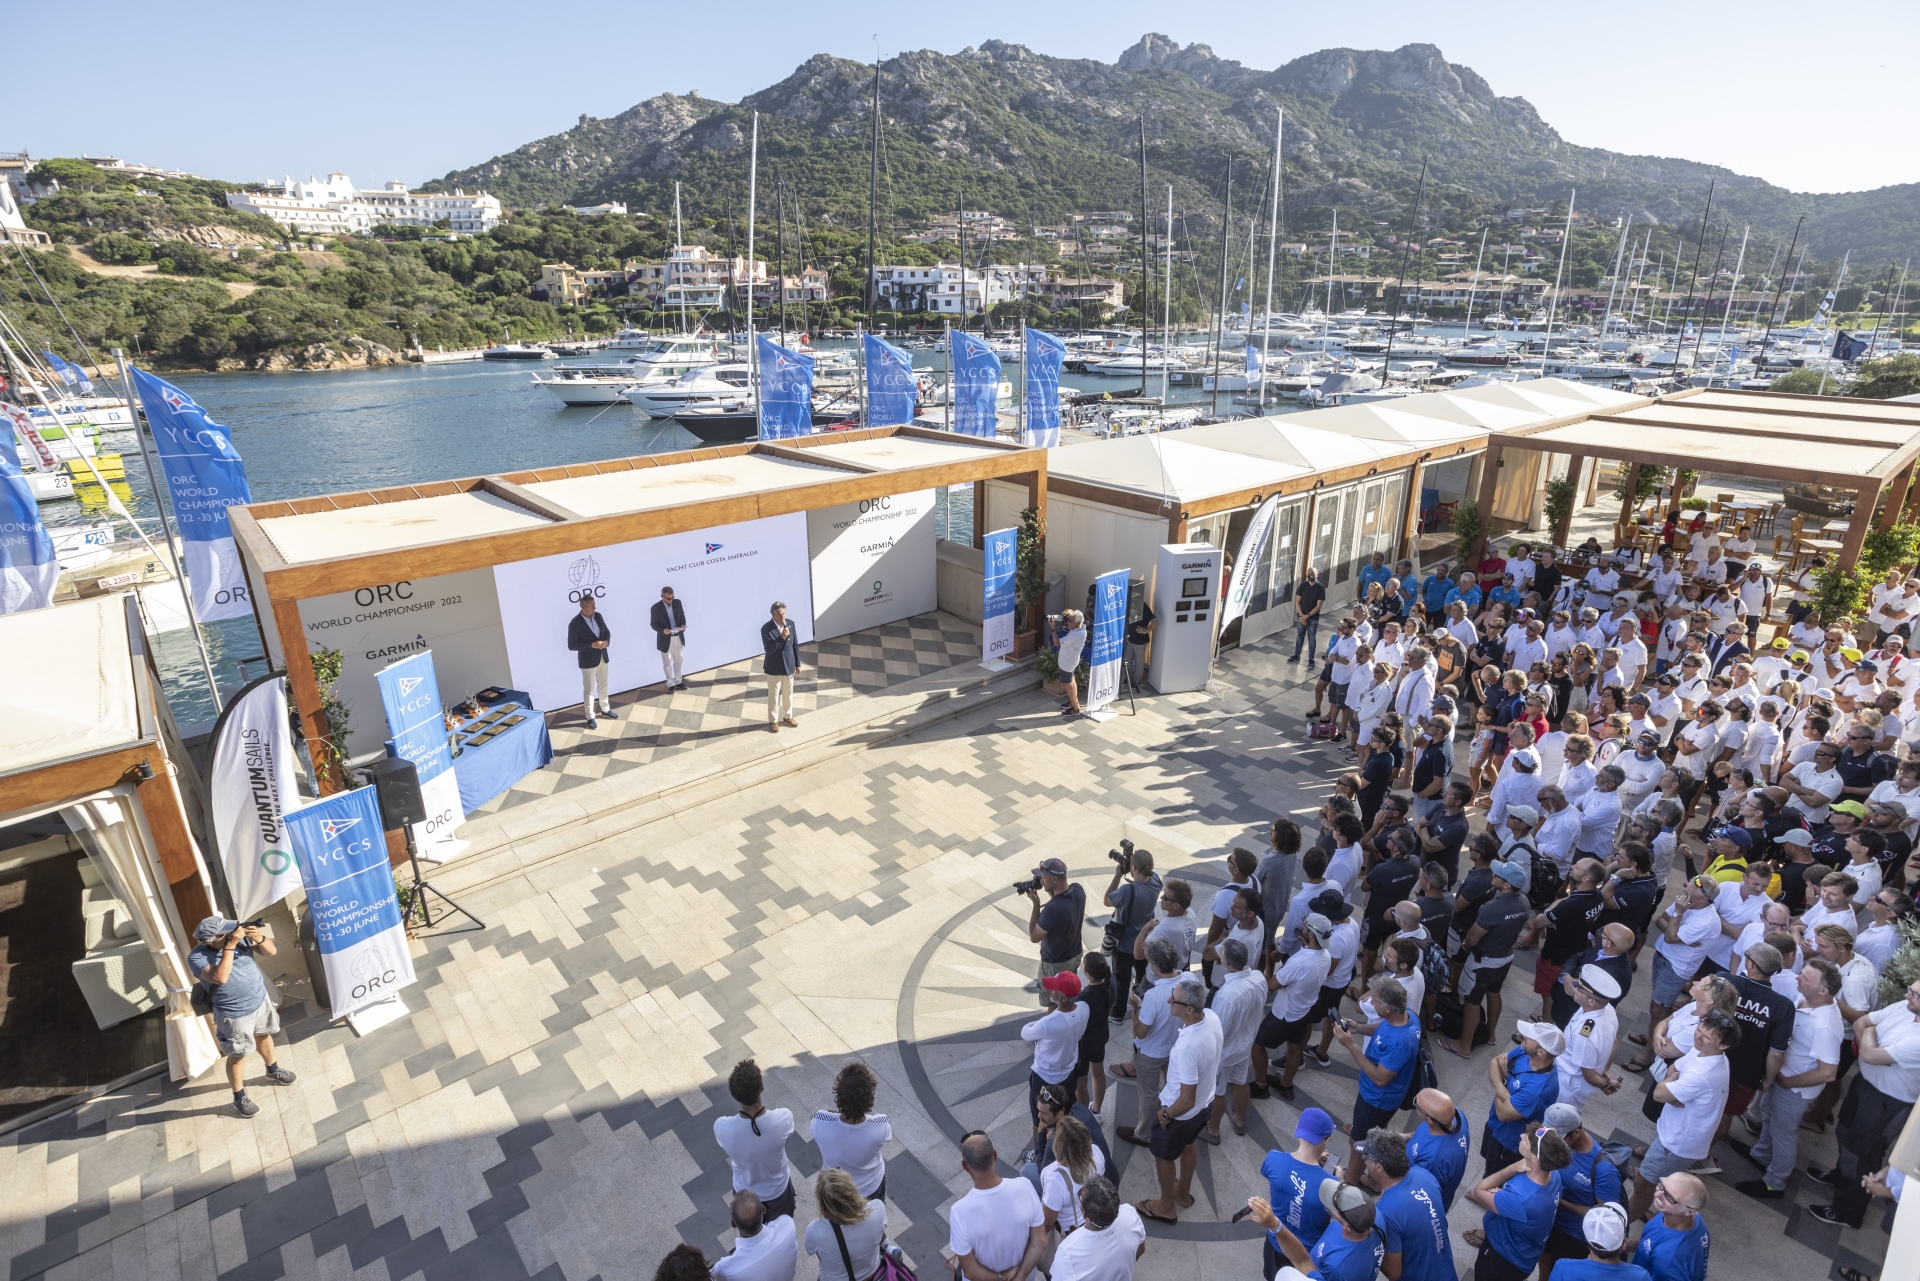 Concluso con successo a Porto Cervo il Mondiale ORC di vela d’altura - News - Yacht Club Costa Smeralda